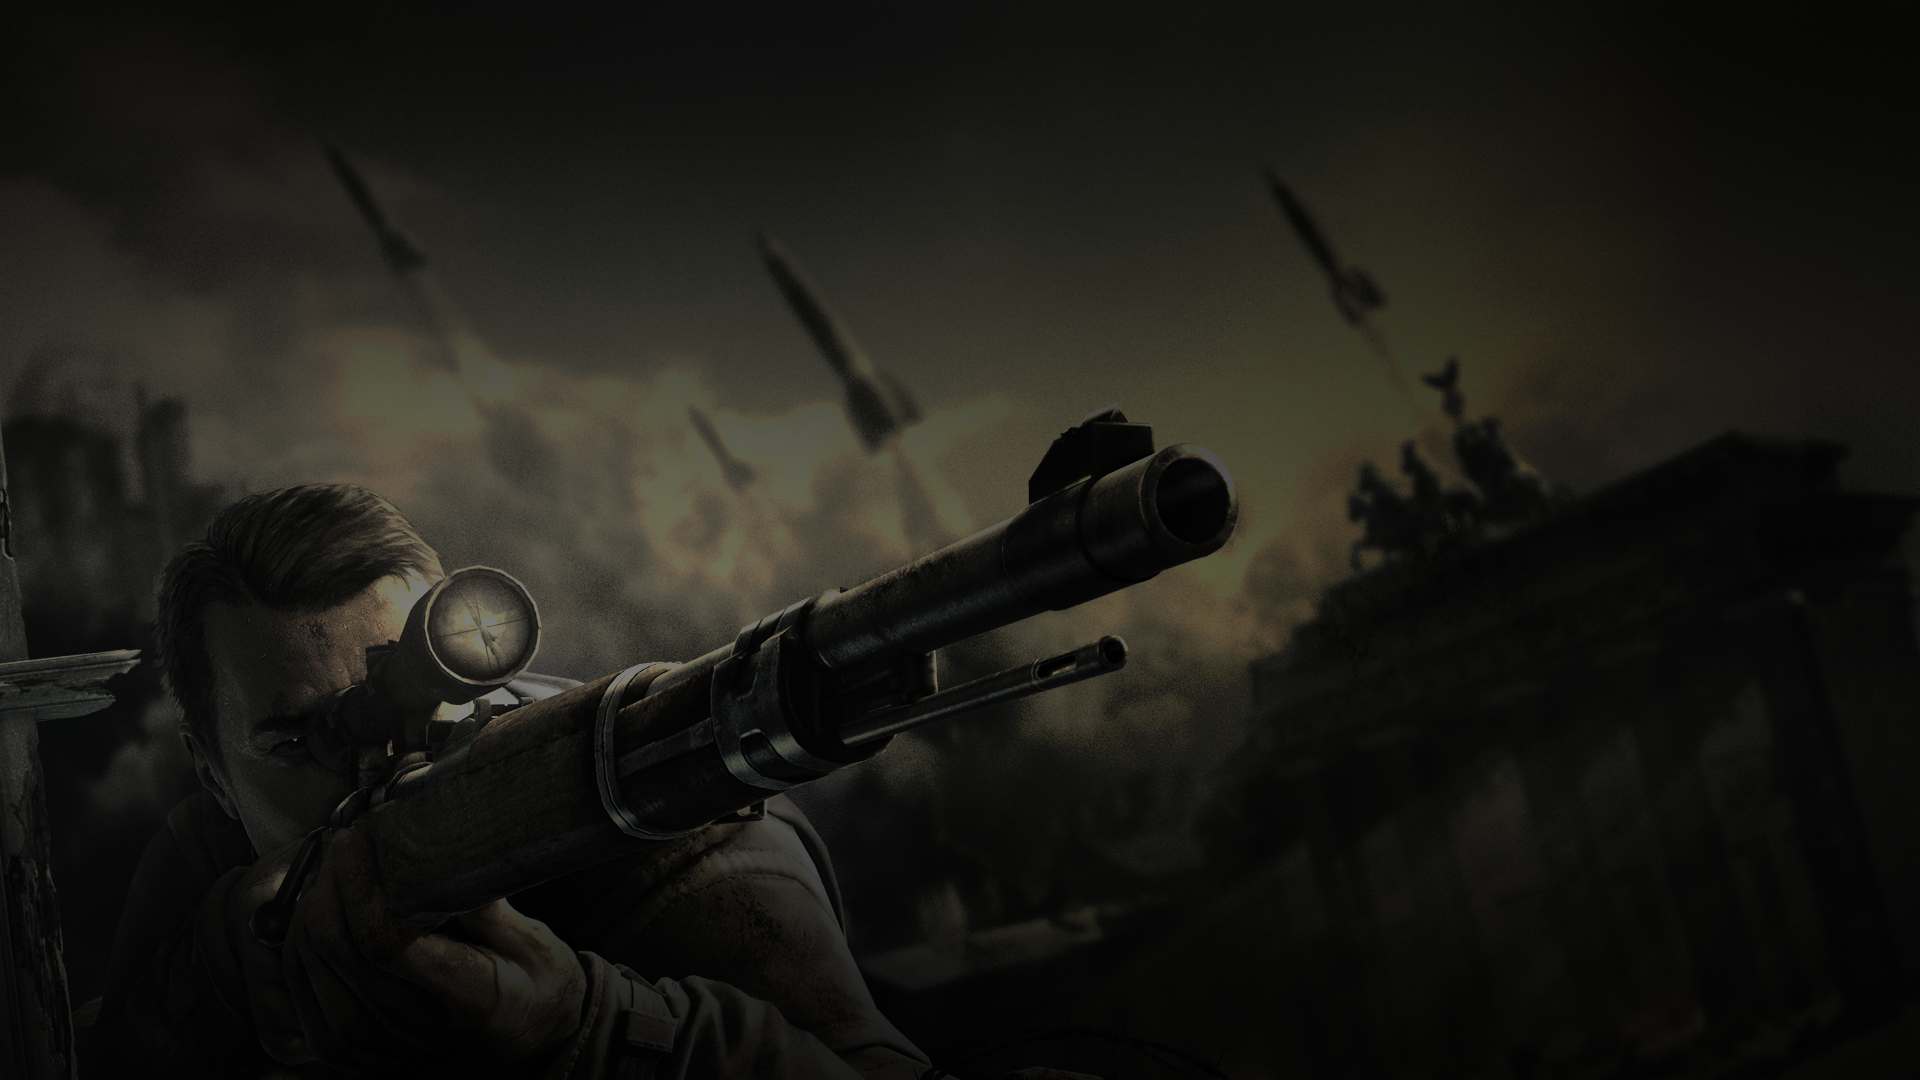 Sniper Elite V2 HD Wallpapers and Background Images   stmednet